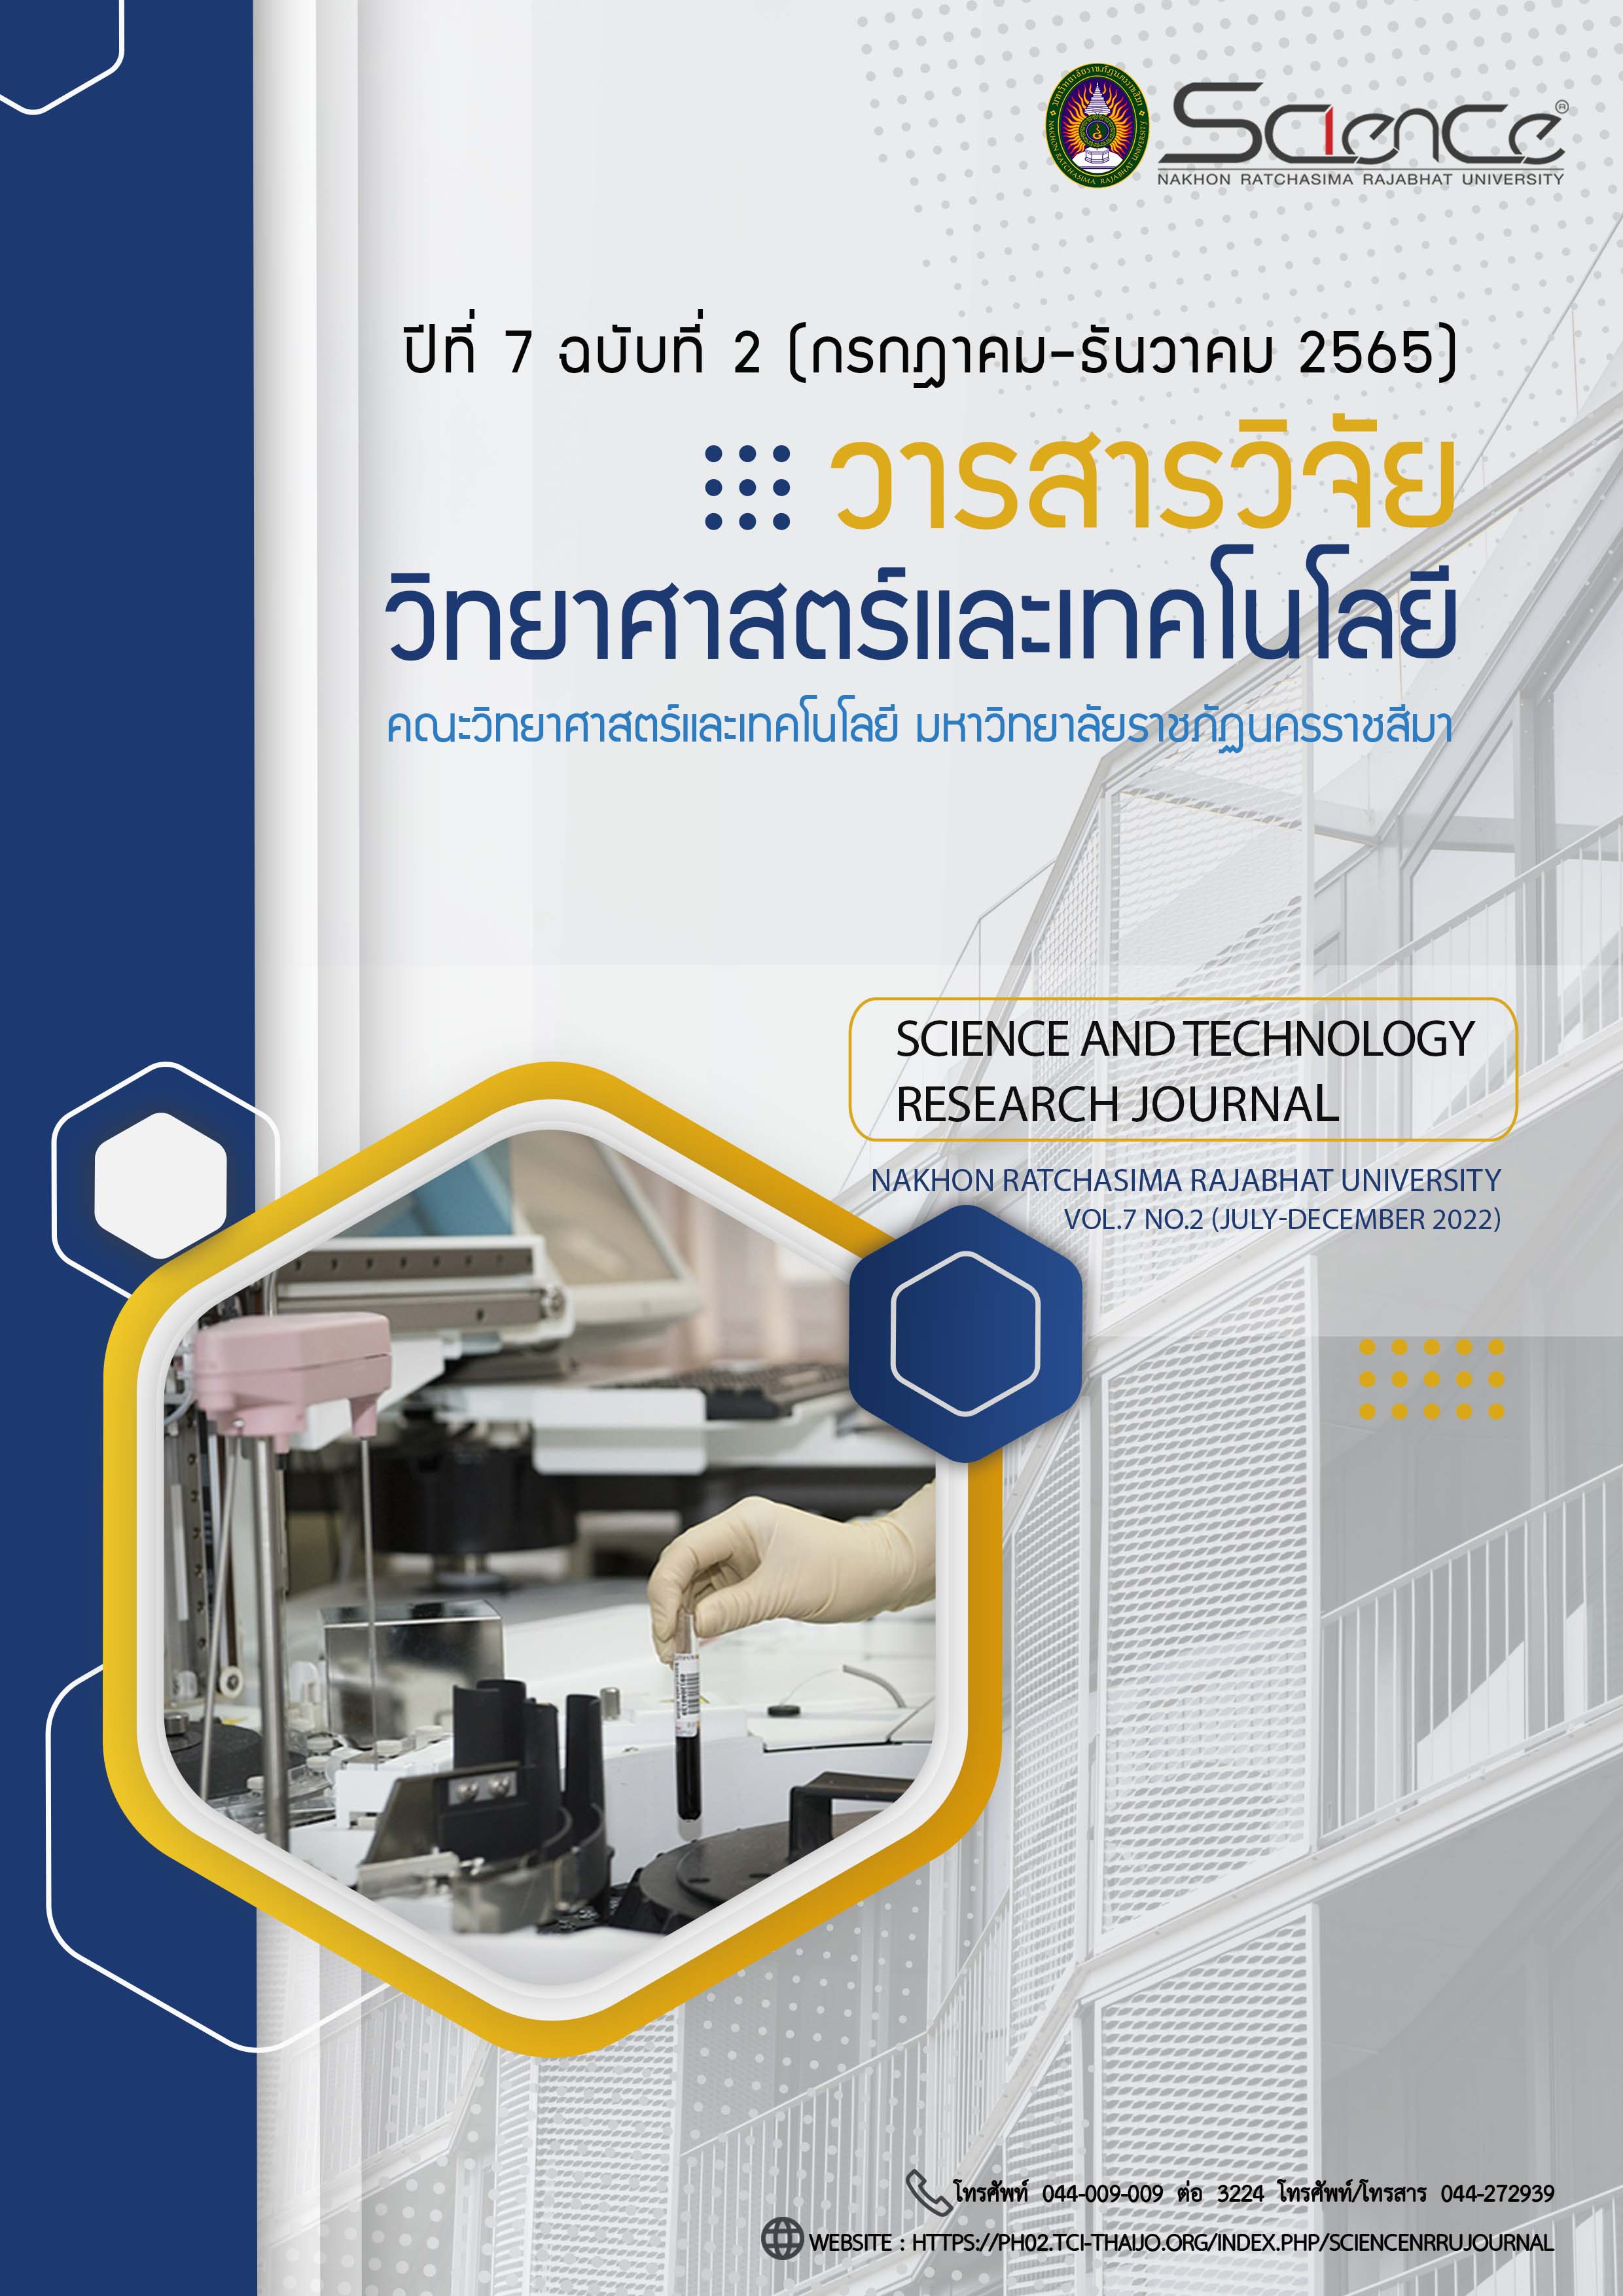 					ดู ปีที่ 7 ฉบับที่ 2 (2022): กรกฎาคม – ธันวาคม : วารสารวิจัยวิทยาศาสตร์และเทคโนโลยี มหาวิทยาลัยราชภัฏนครราชสีมา
				